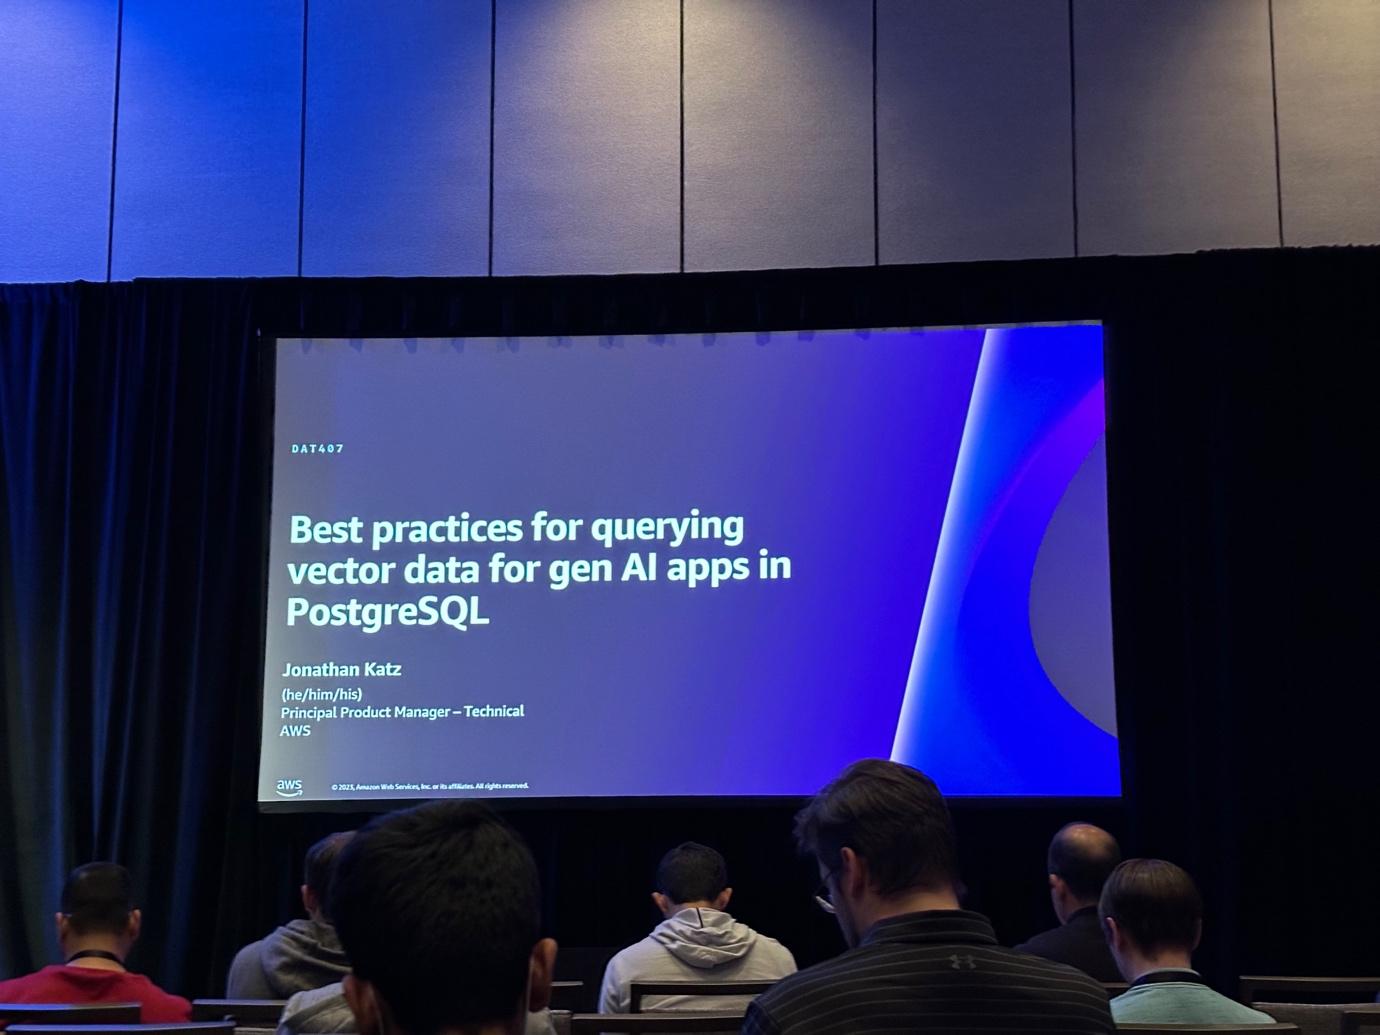 Best practice for querying vector data for gen AI apps in PostgreSQL